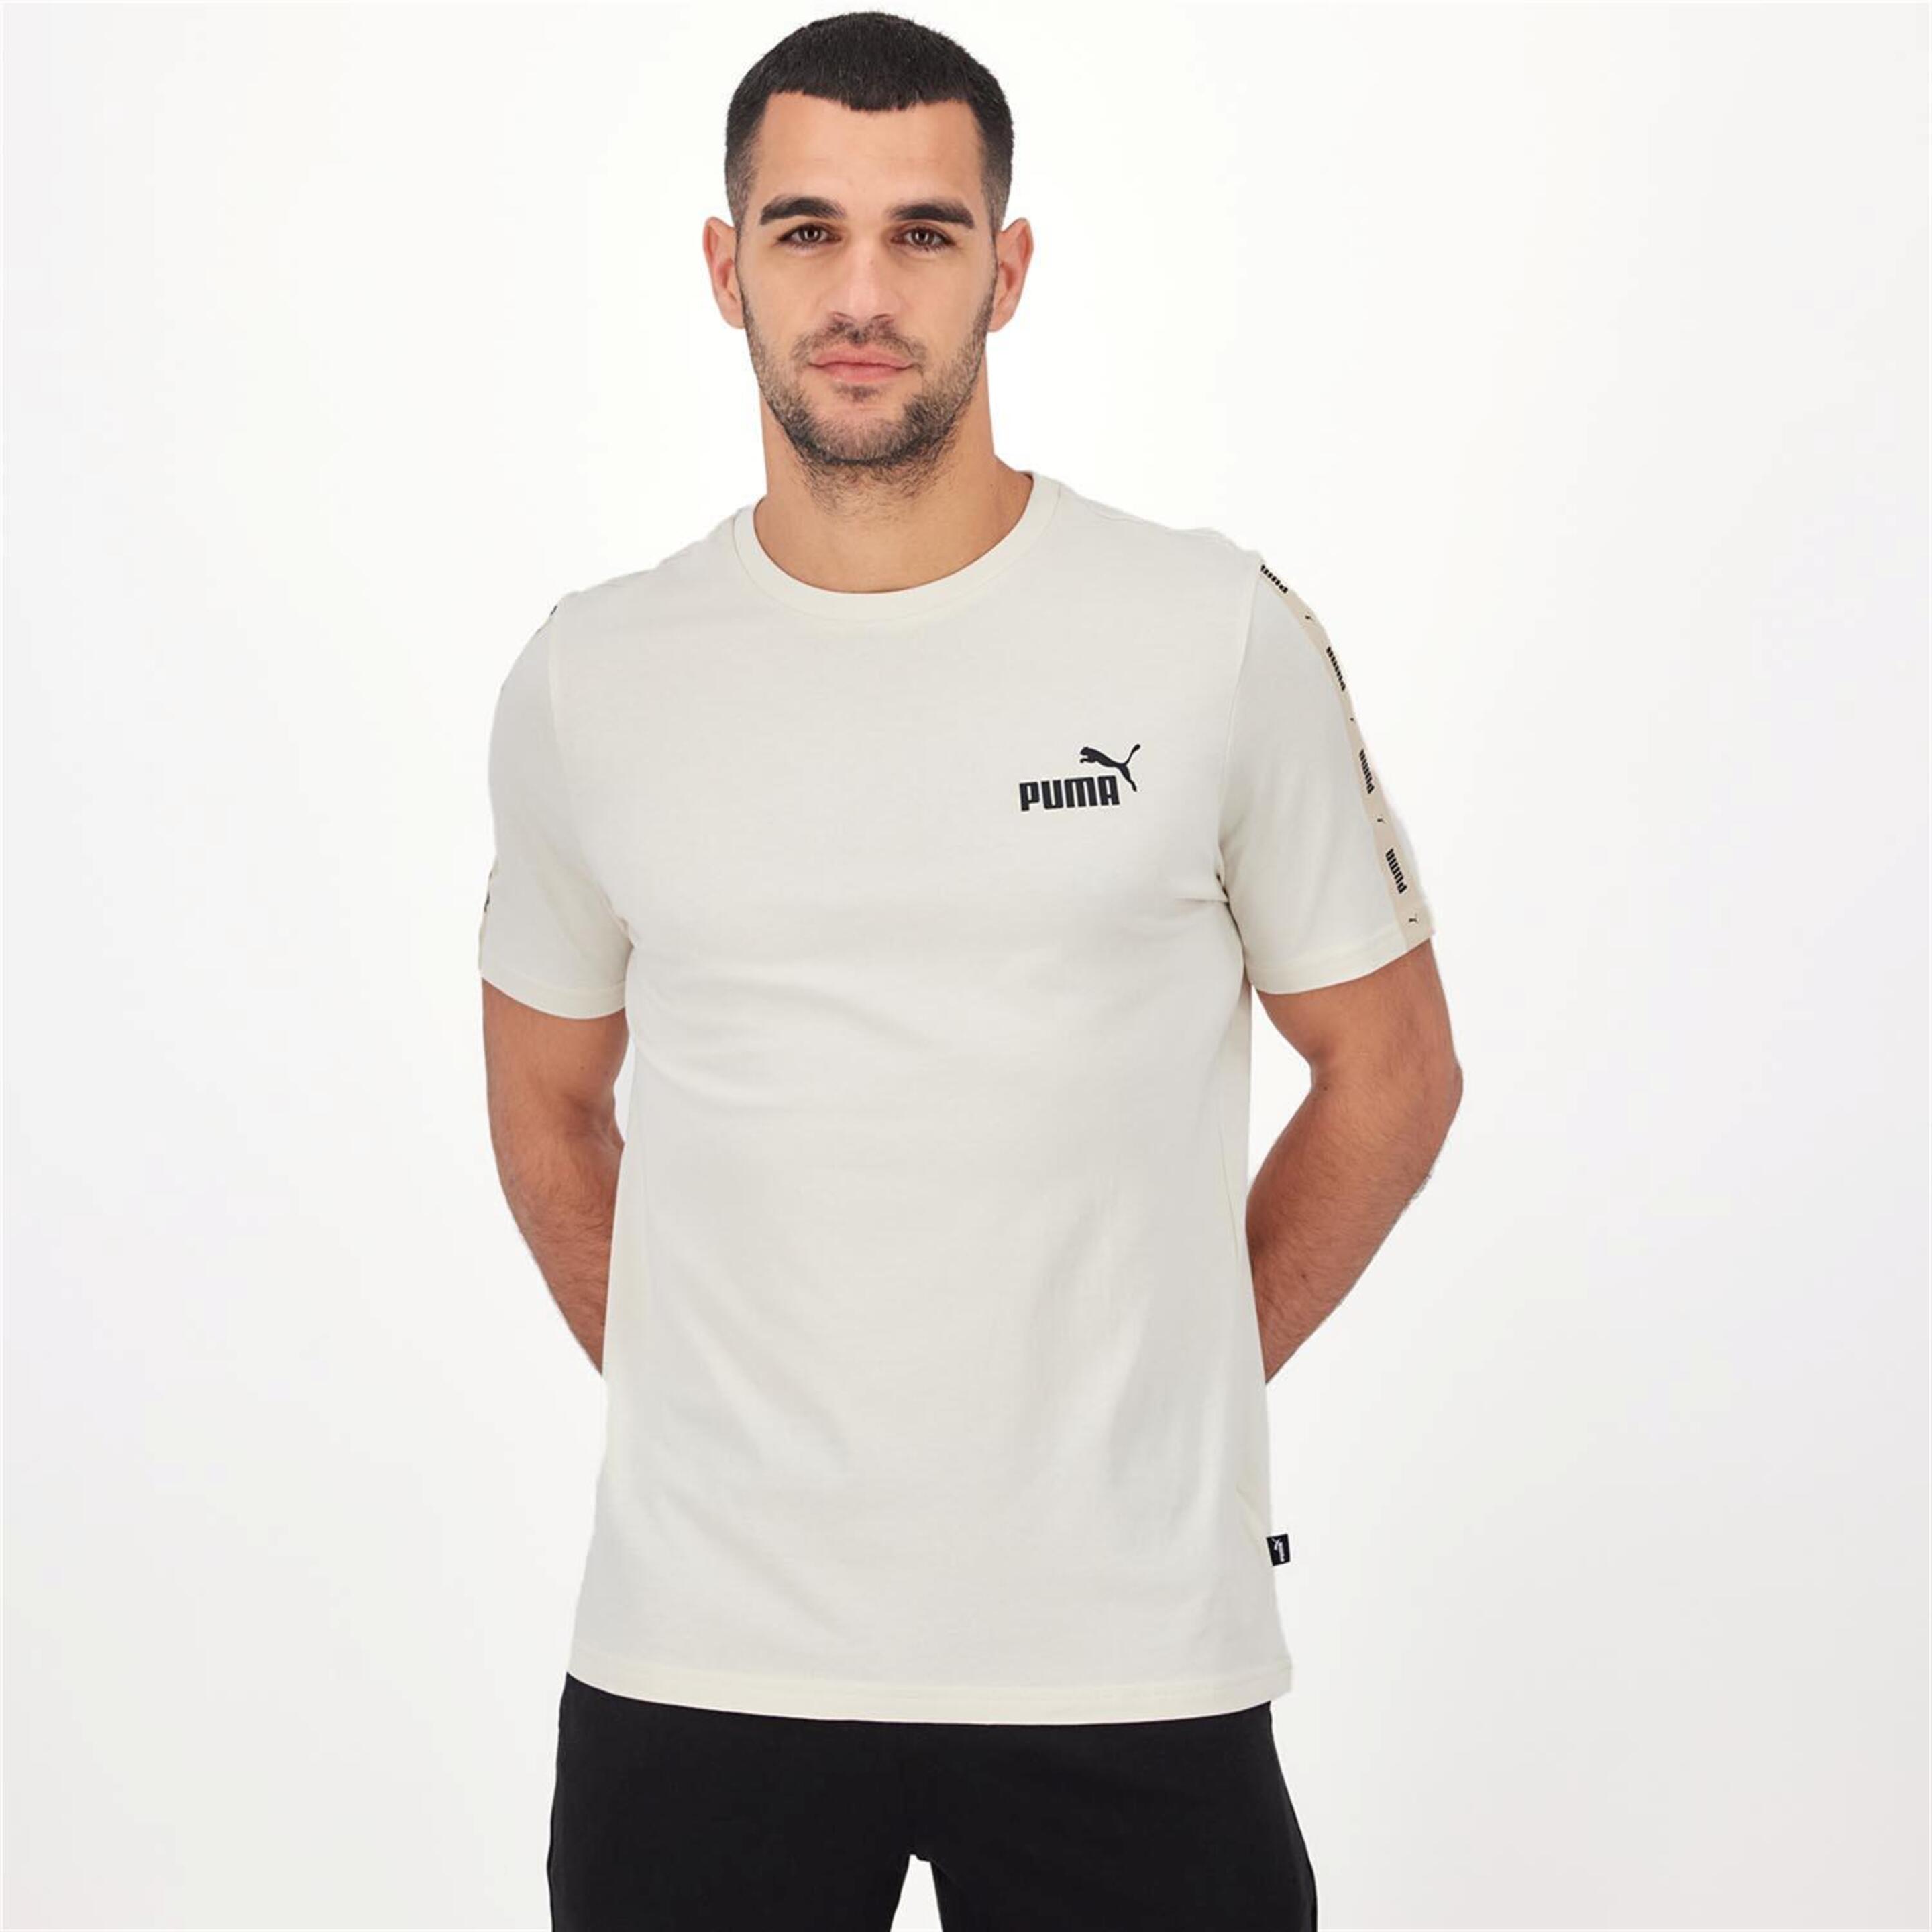 Puma Tape - blanco - T-shirt Homem